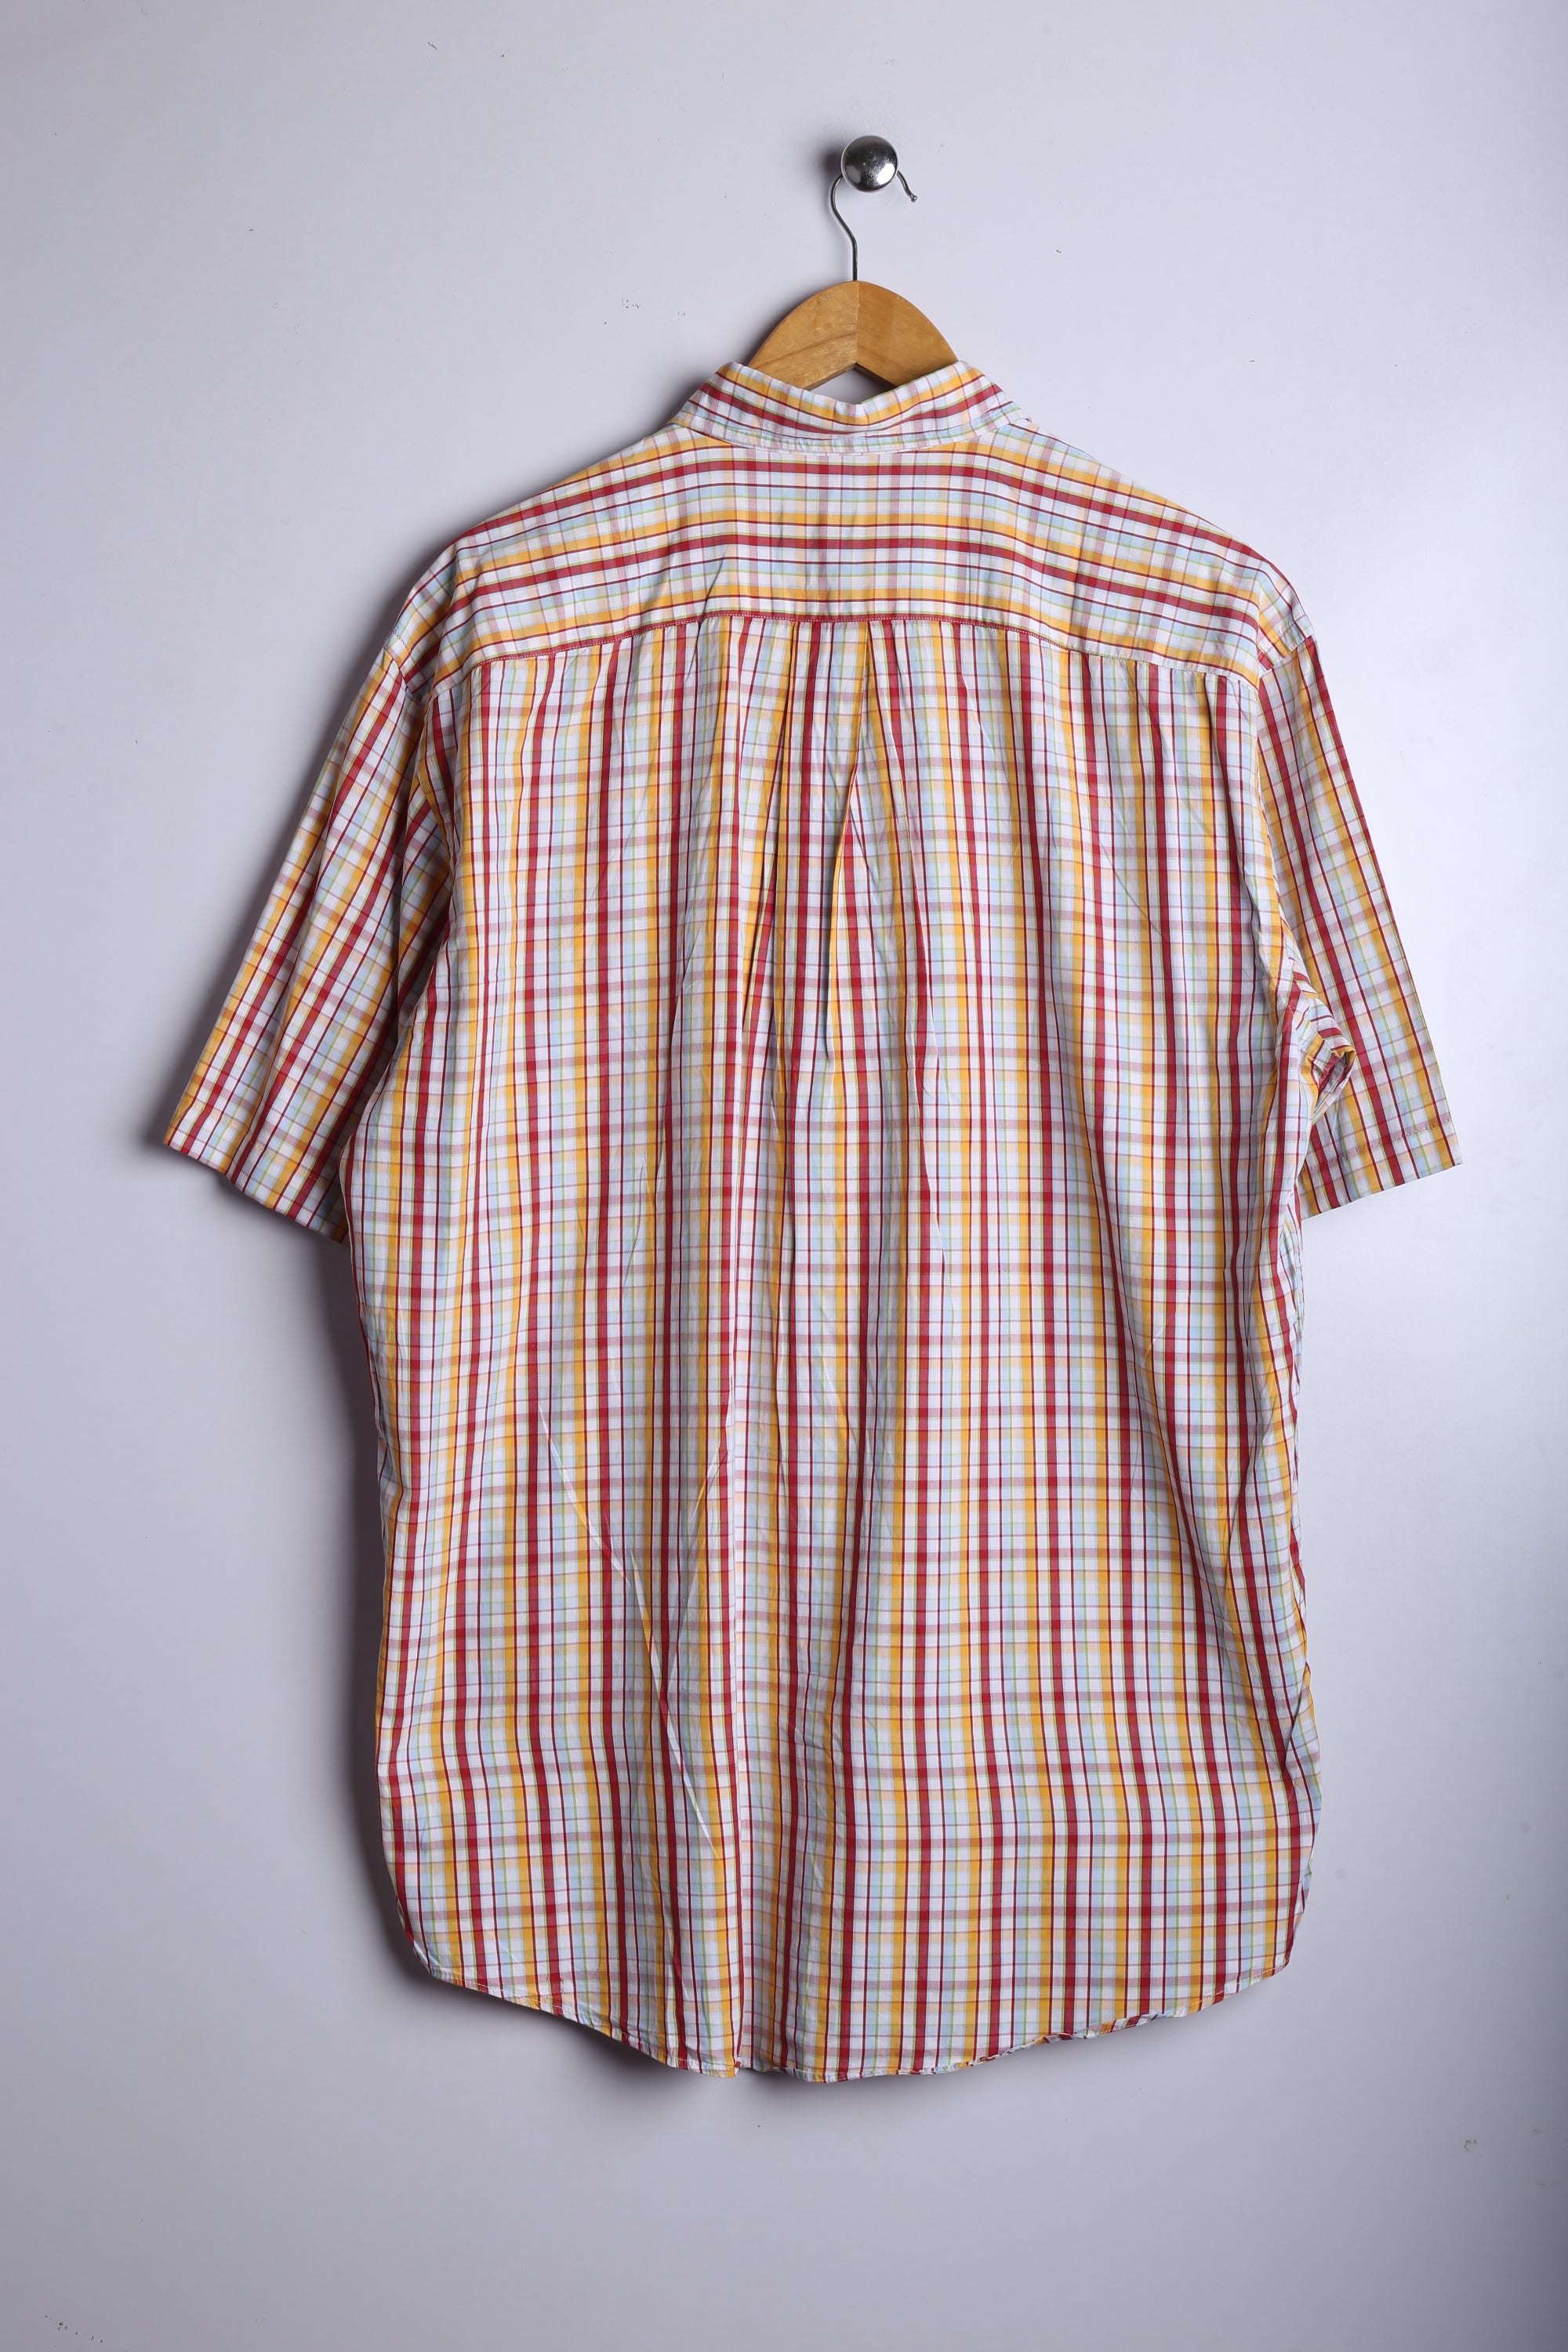 Vintage Espirit Half Sleeve Button Down Shirt Red/Orange Checkred